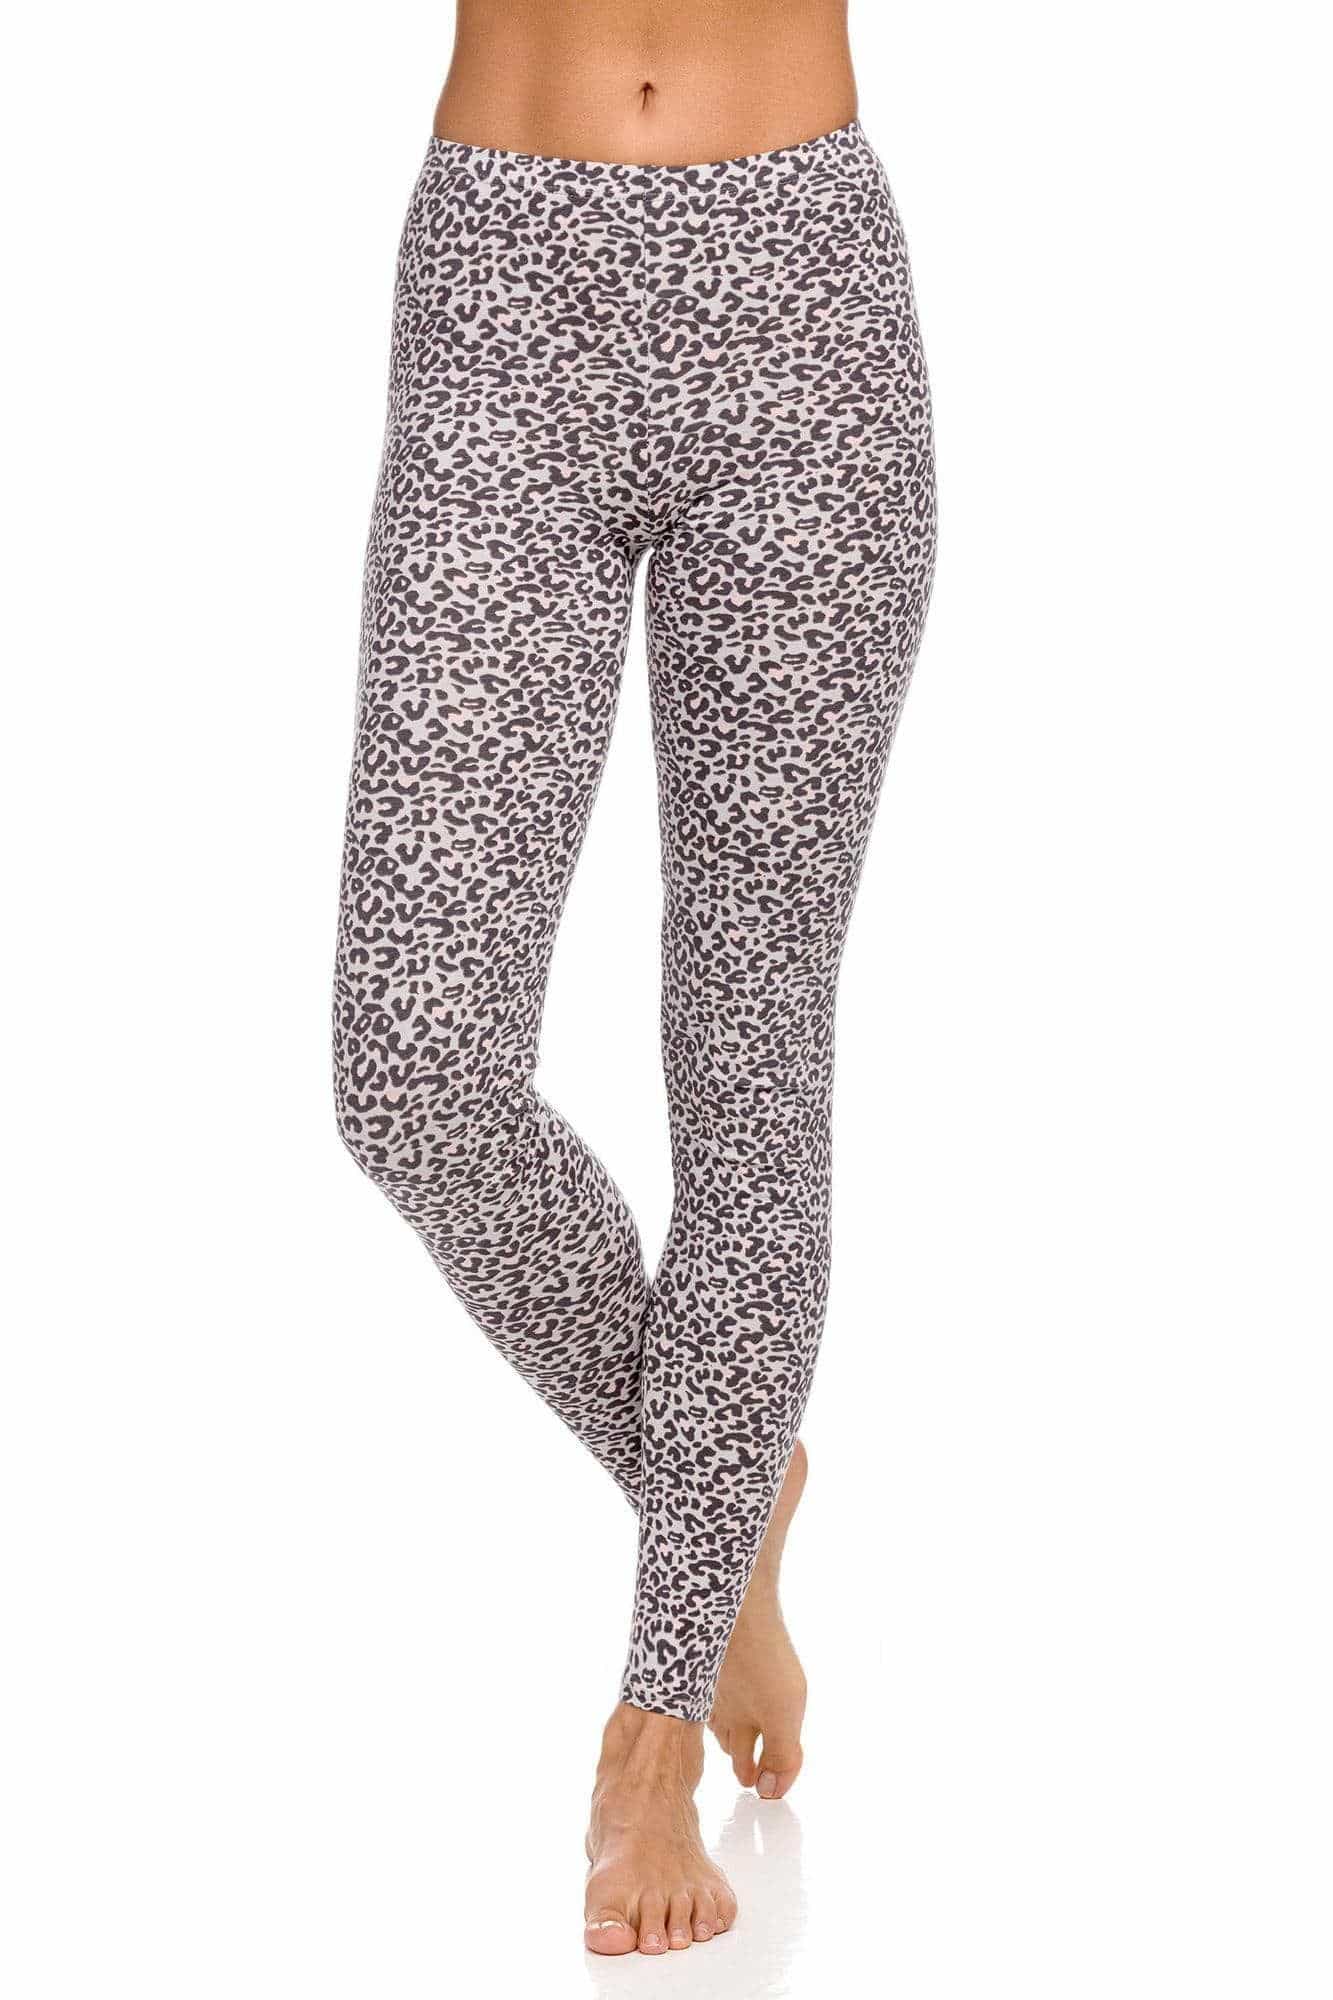 Women’s leopard leggings